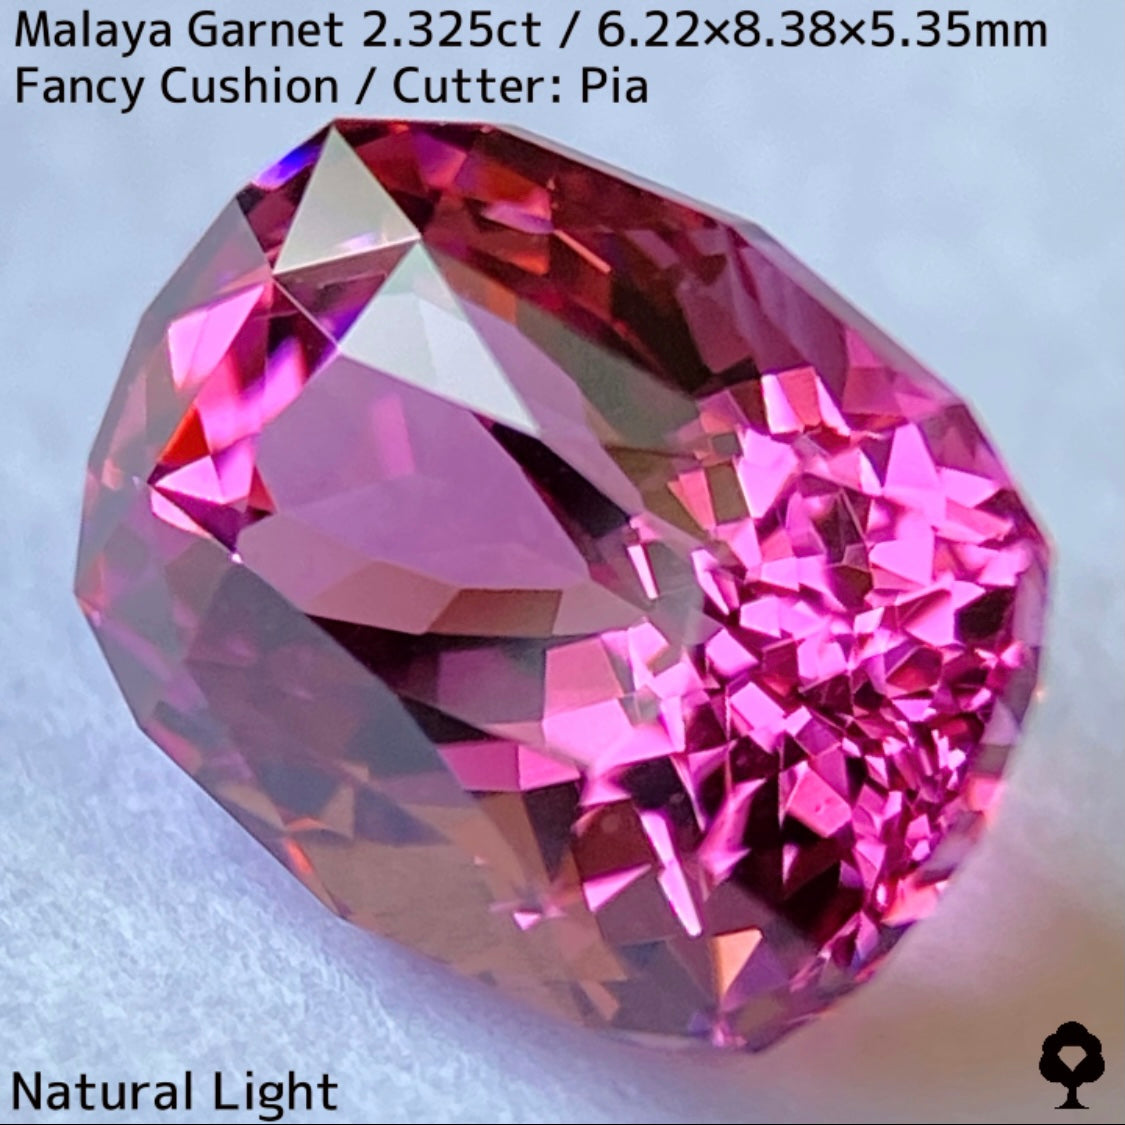 マラヤガーネット2.325ct★ハンパじゃない煌めきのスーパートップクオリティの美色美結晶